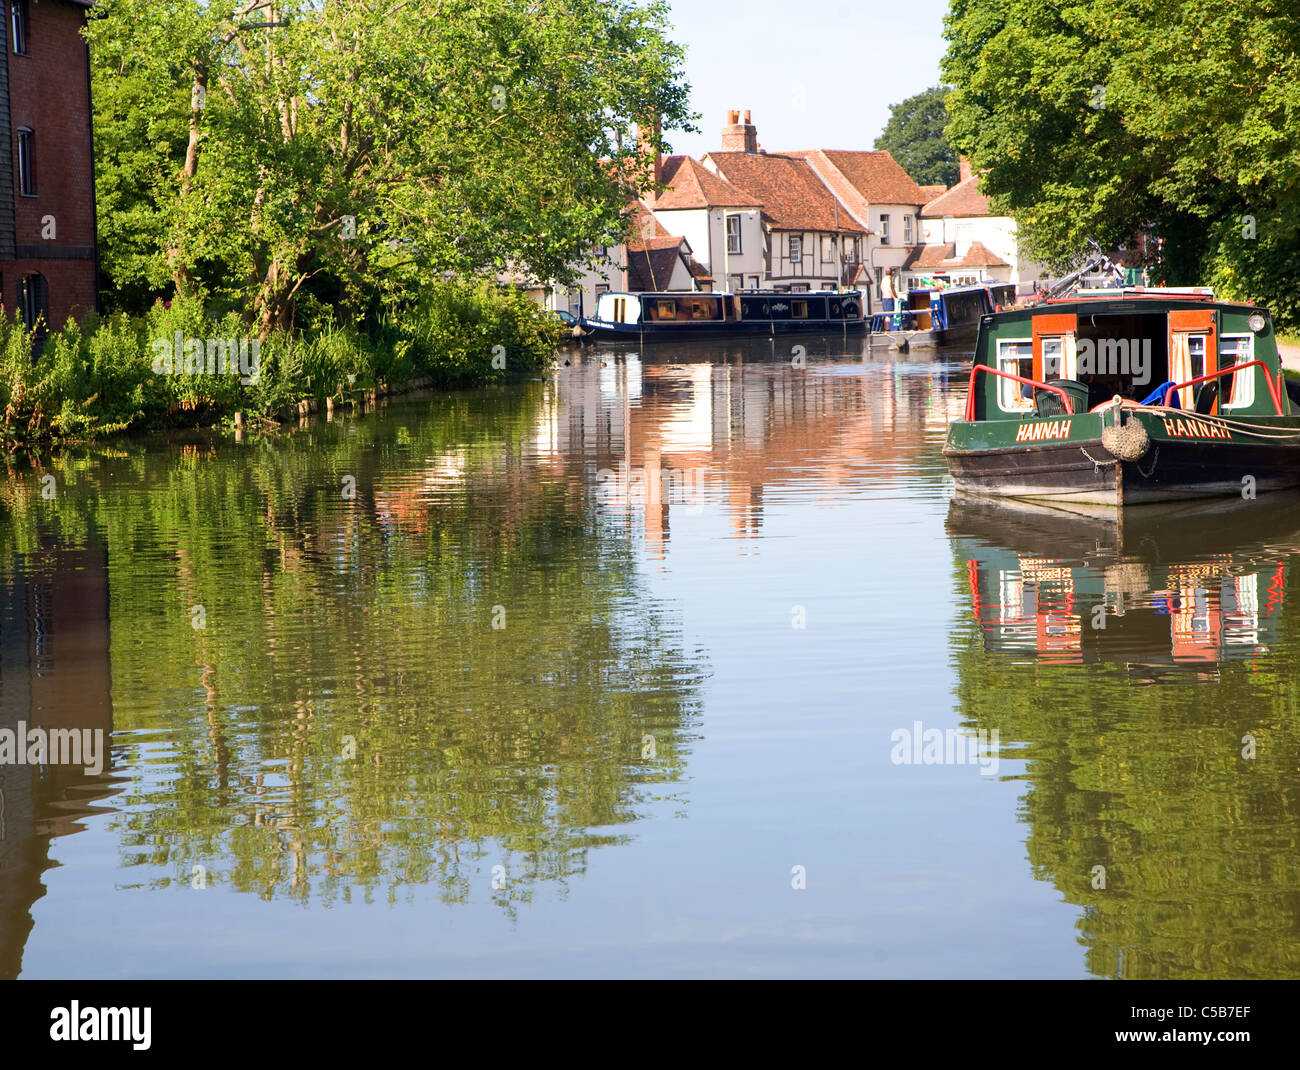 Kennet and Avon canal, Newbury lock, Newbury, Berkshire, England Stock Photo